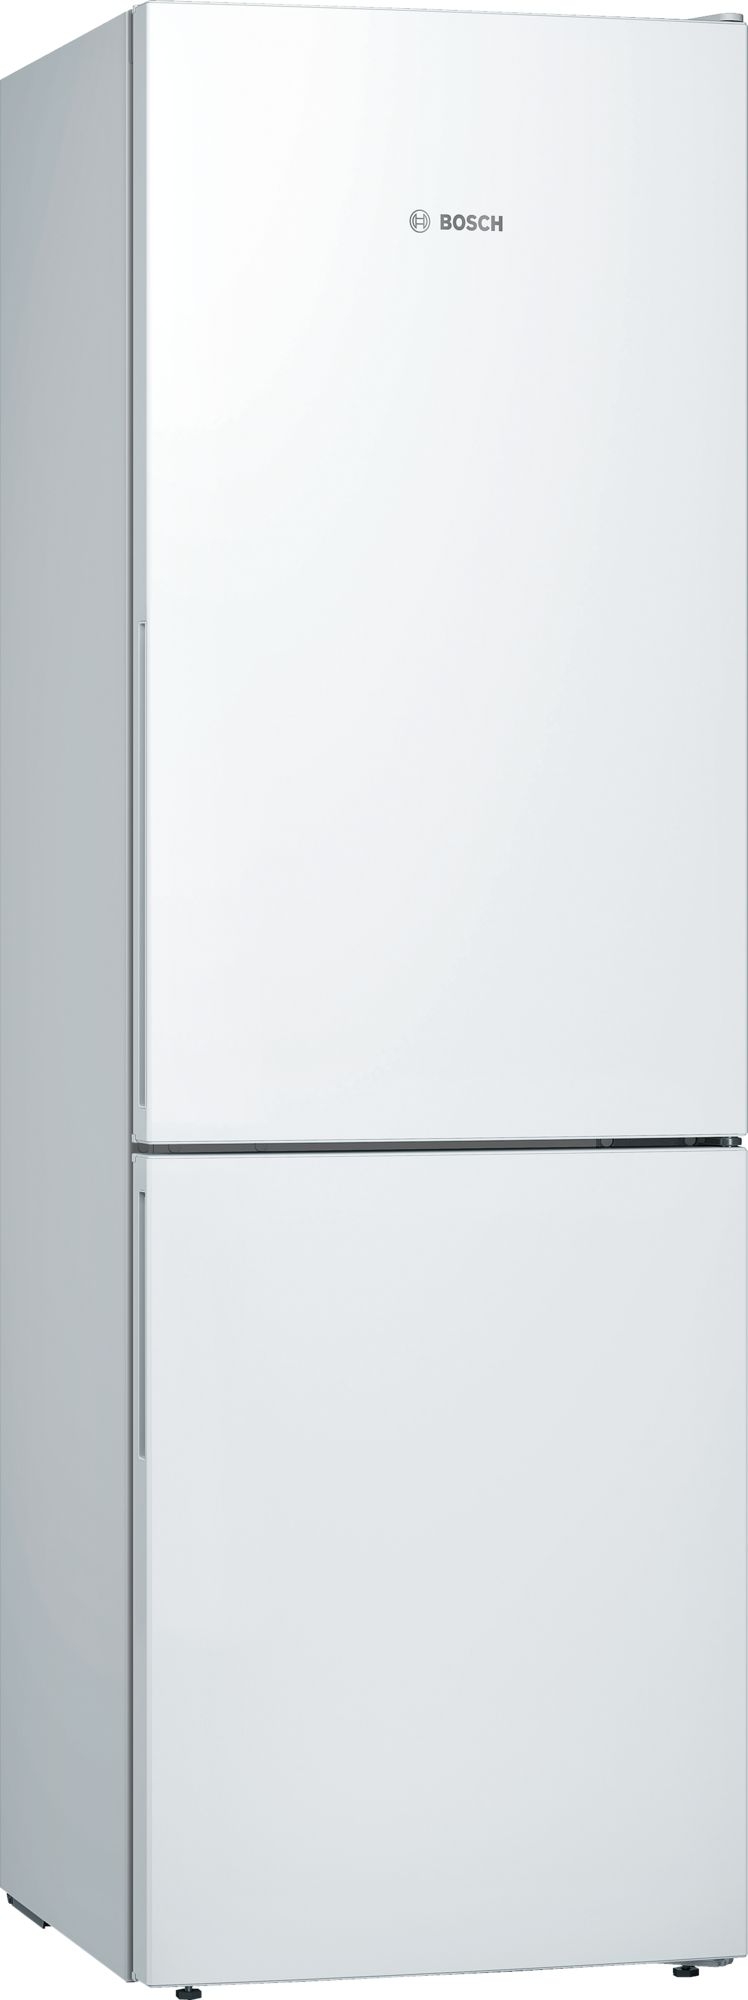 Bosch KGE36AWCA Freestanding Low Frost Fridge Freezer-White